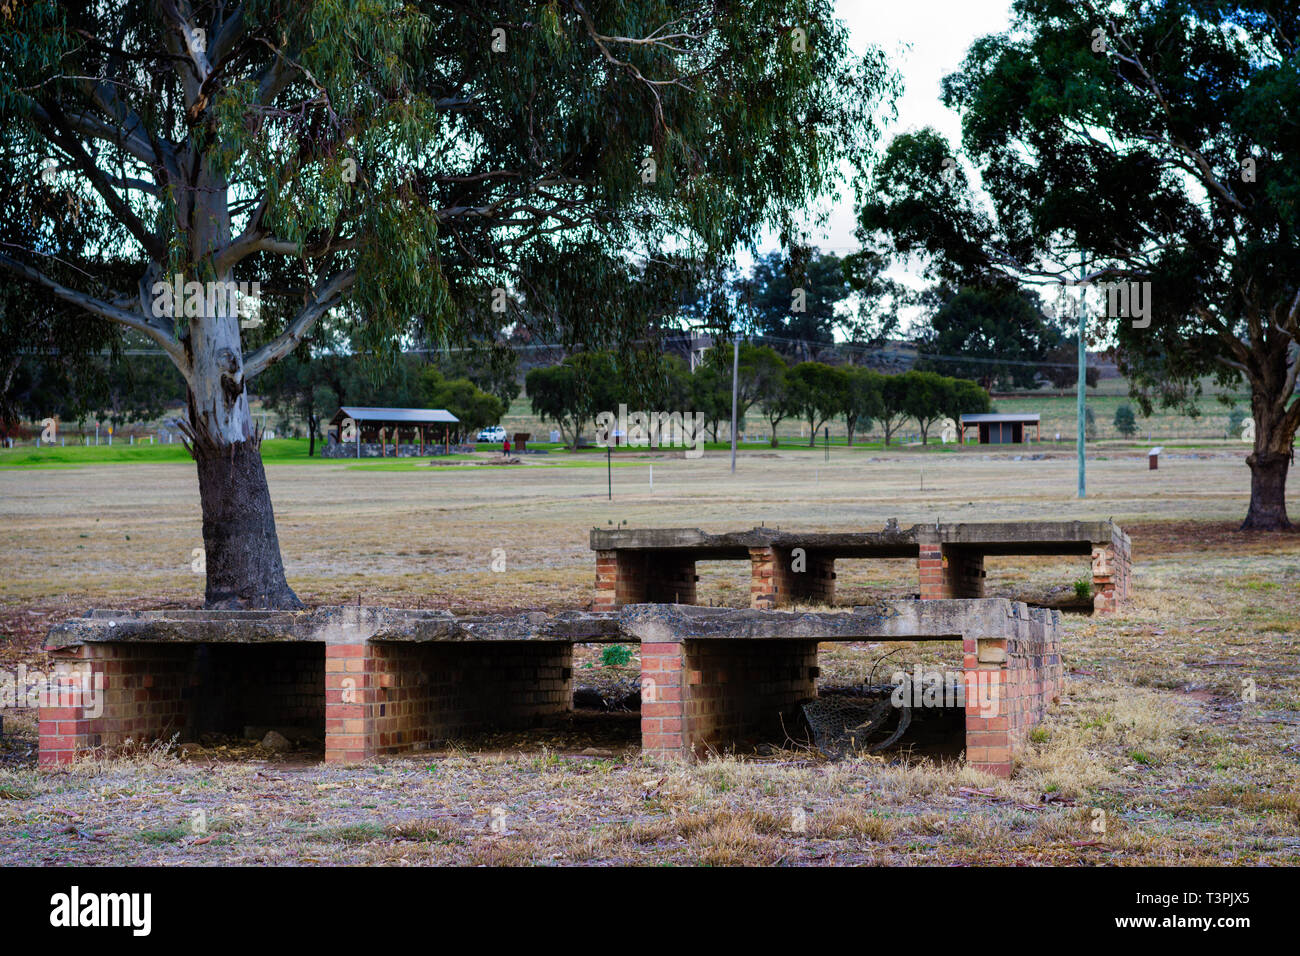 Reste des bâtiments en béton à Cowra prisonnier de guerre et Camp d'internement, NSW Australie Cowra Banque D'Images